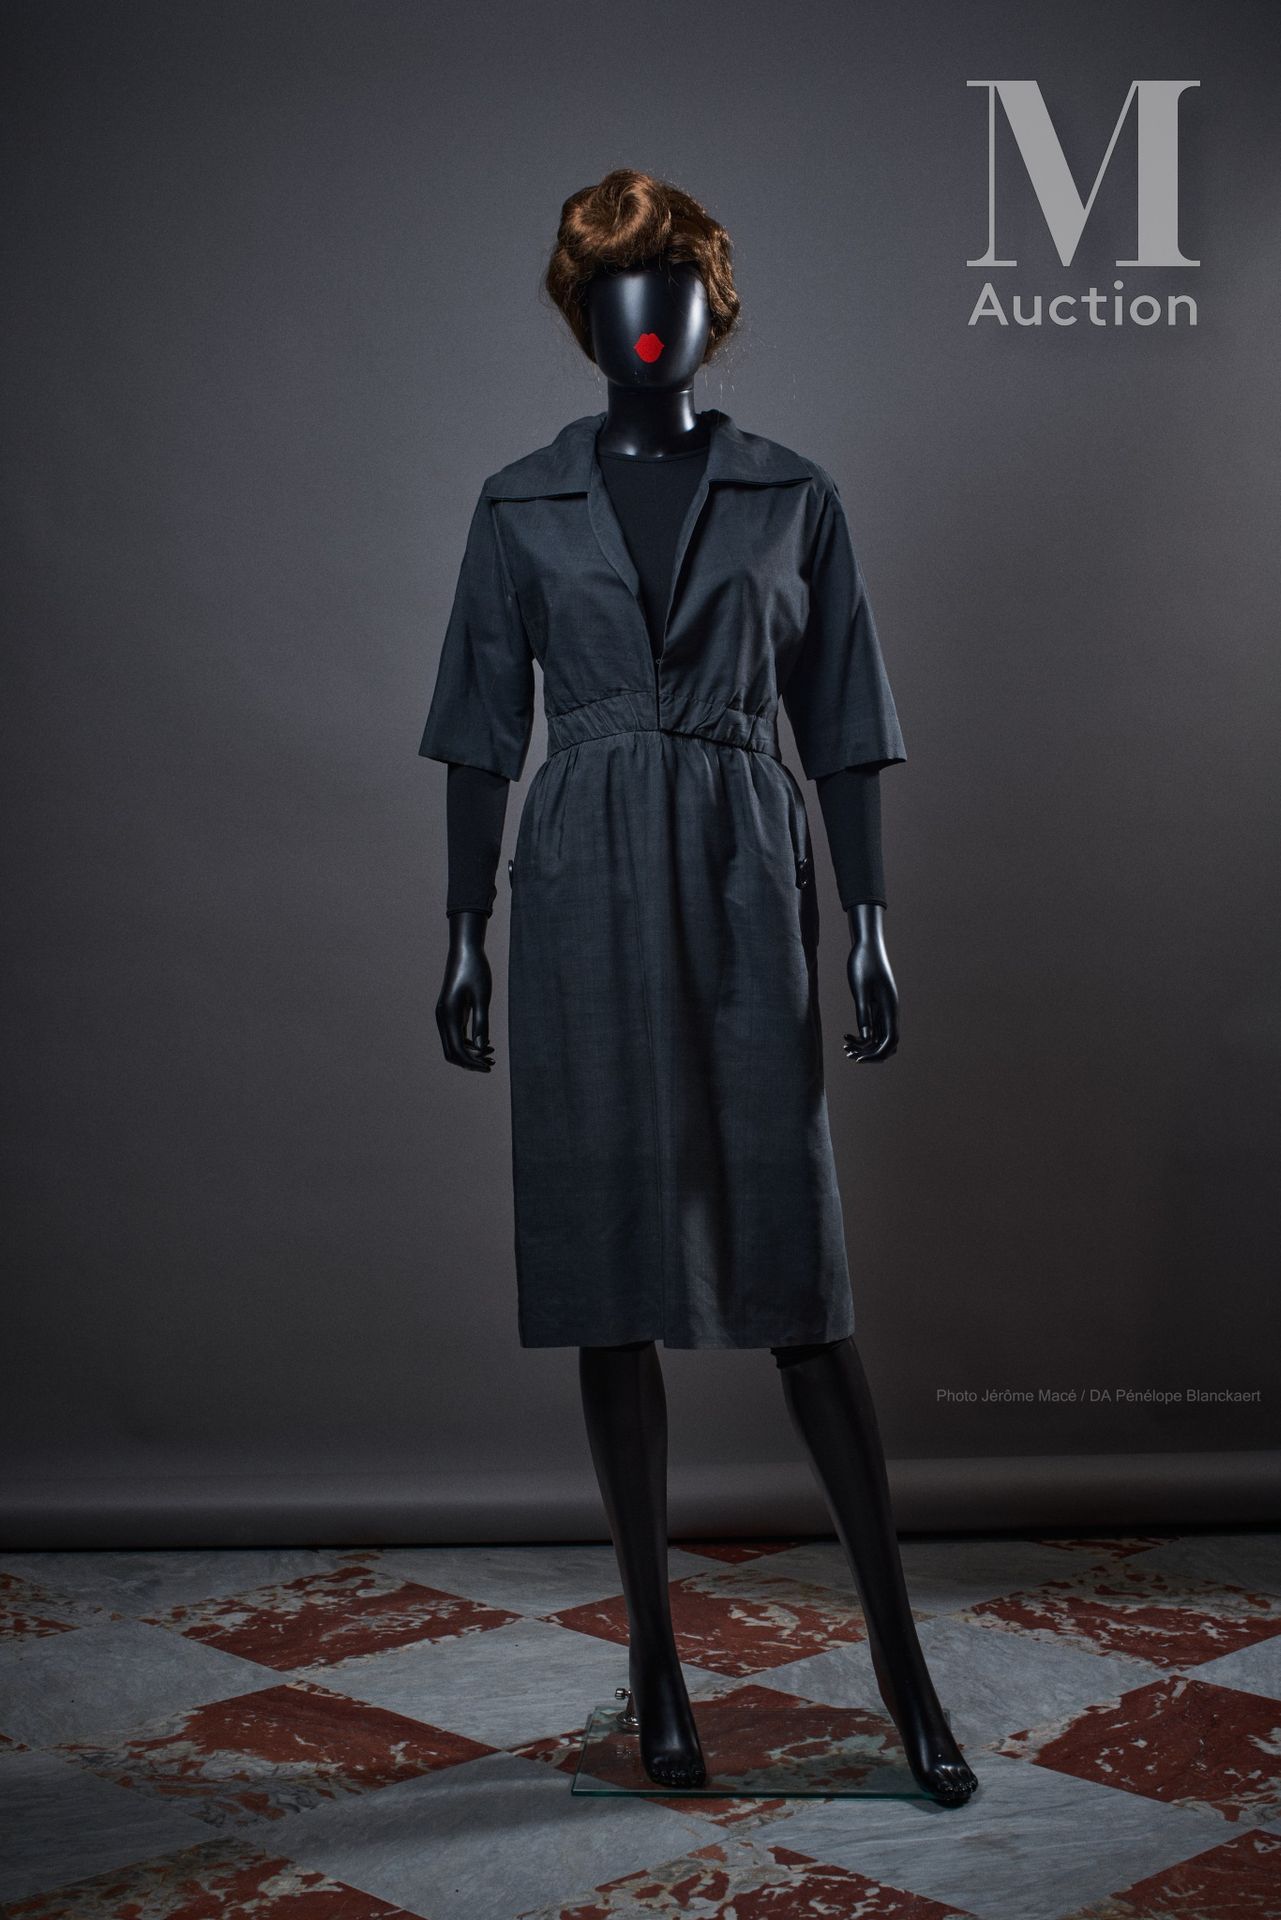 JEANNE LANVIN (HAUTE COUTURE N°73039) - 1950'S 下午的衣服

无烟煤色的丝质山桐布

尺寸：S约。

白色爪子，黑&hellip;